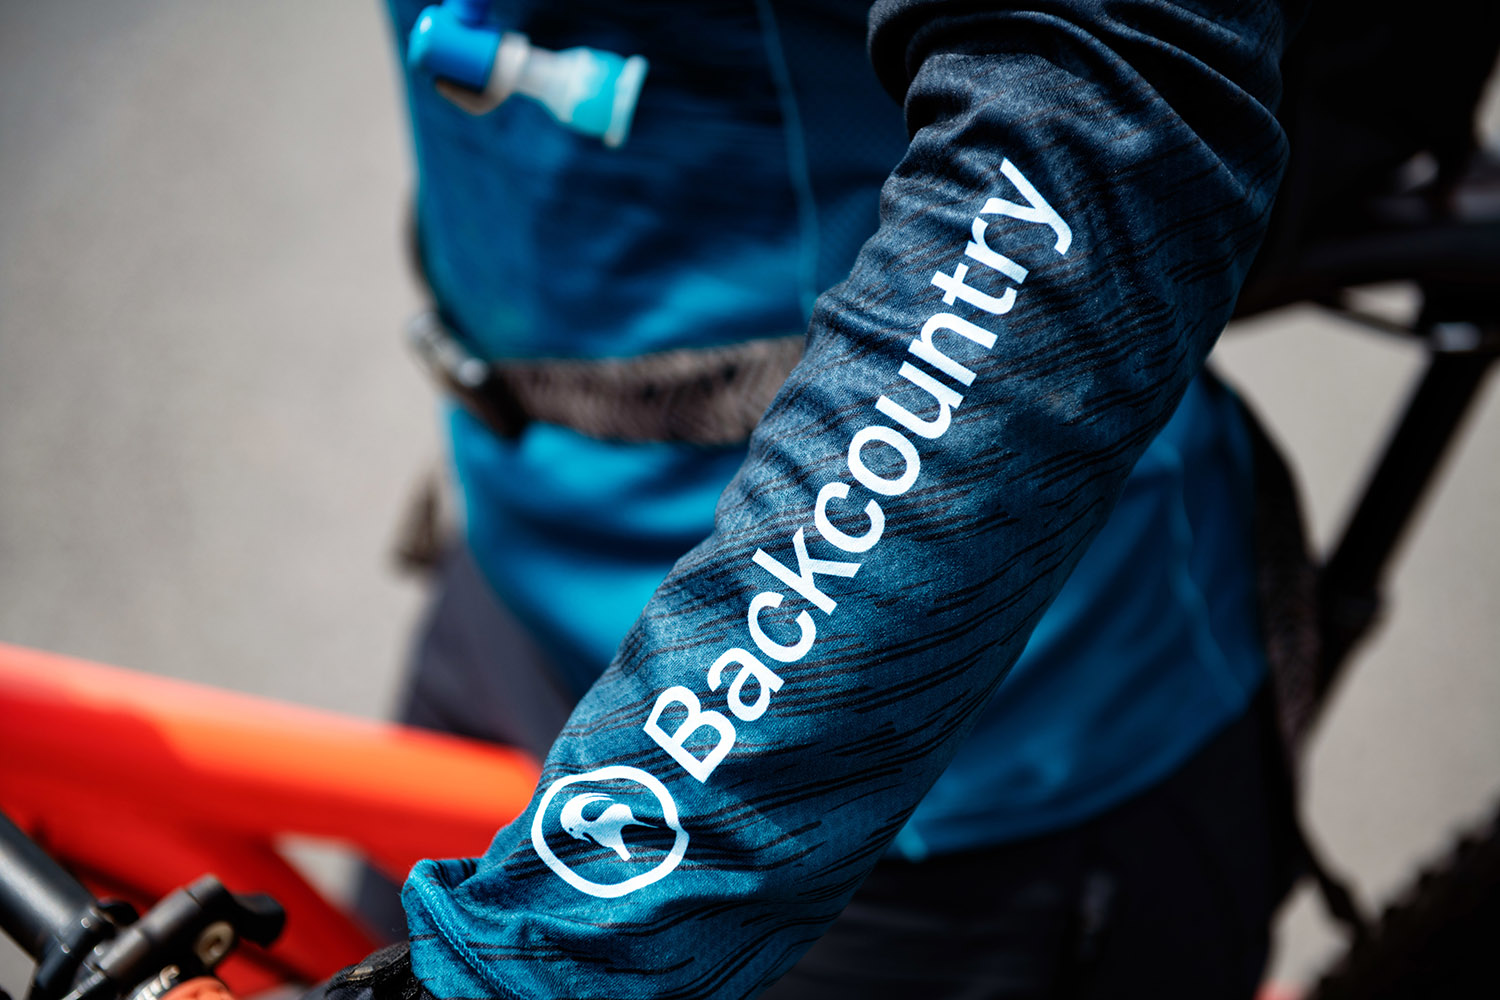 backcountry spring summer 2019 bike